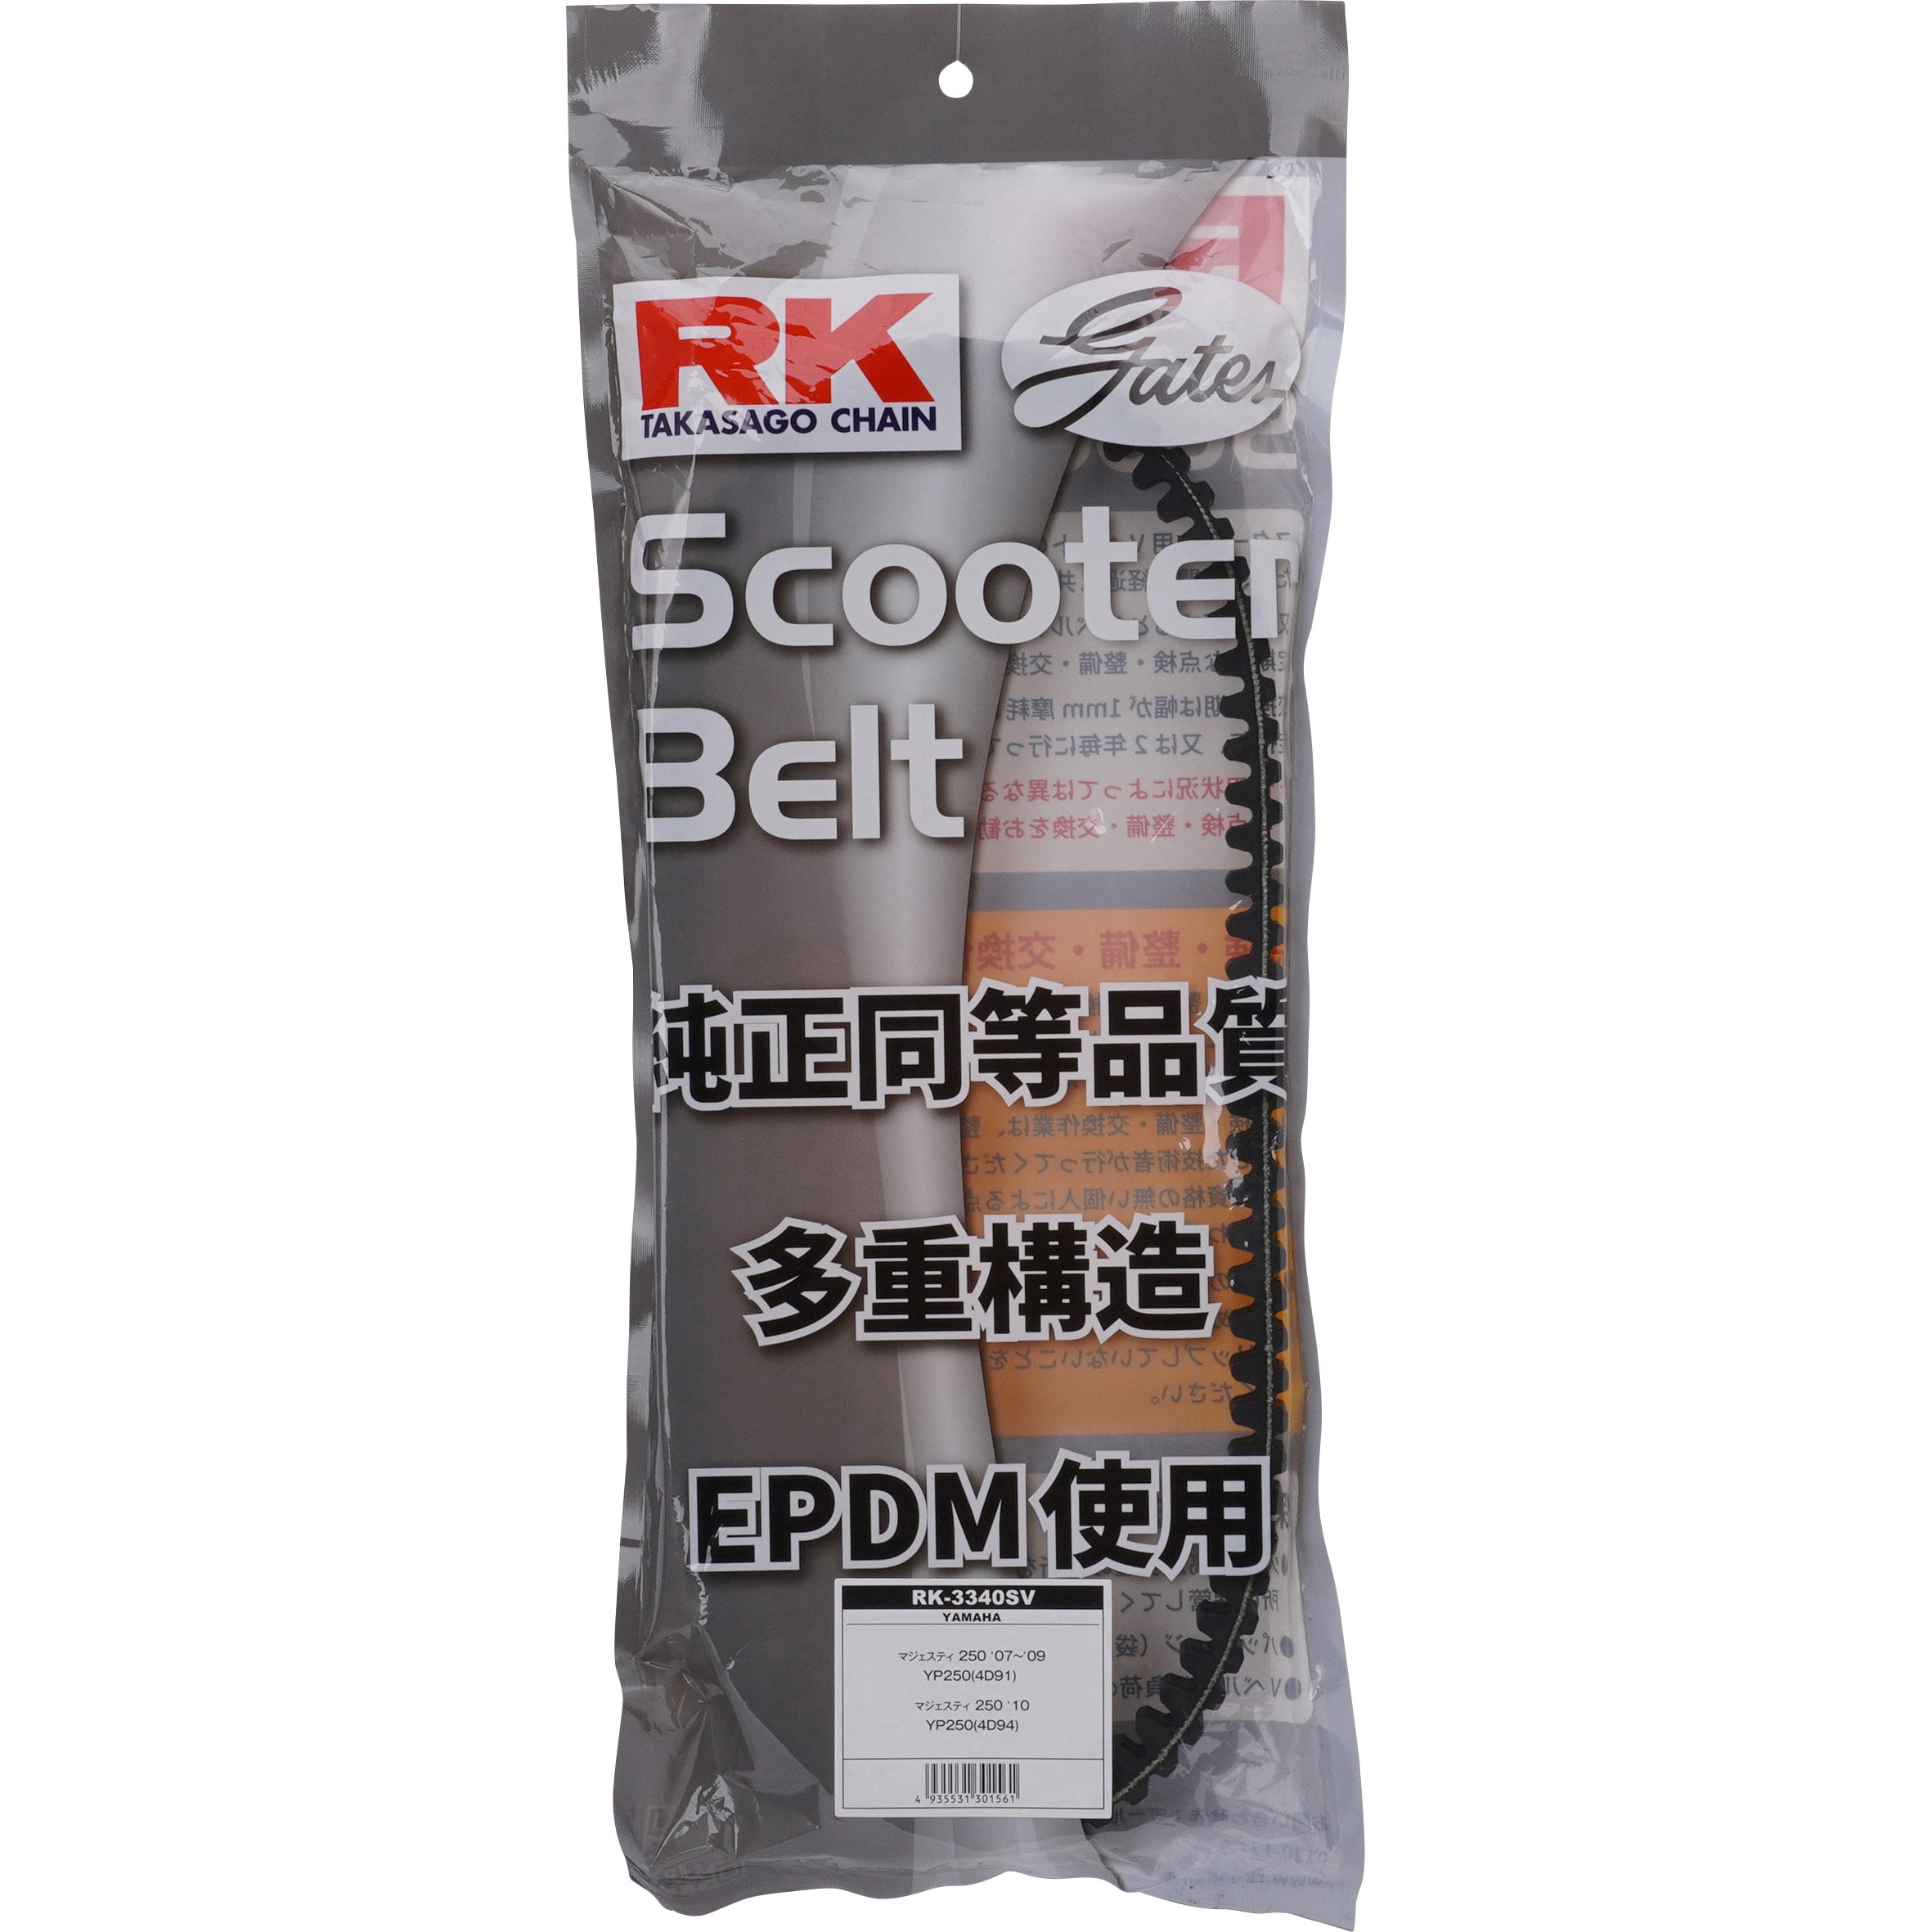 RK-3340SV スクーター用ドライブベルト 1本 RK JAPAN 【通販モノタロウ】